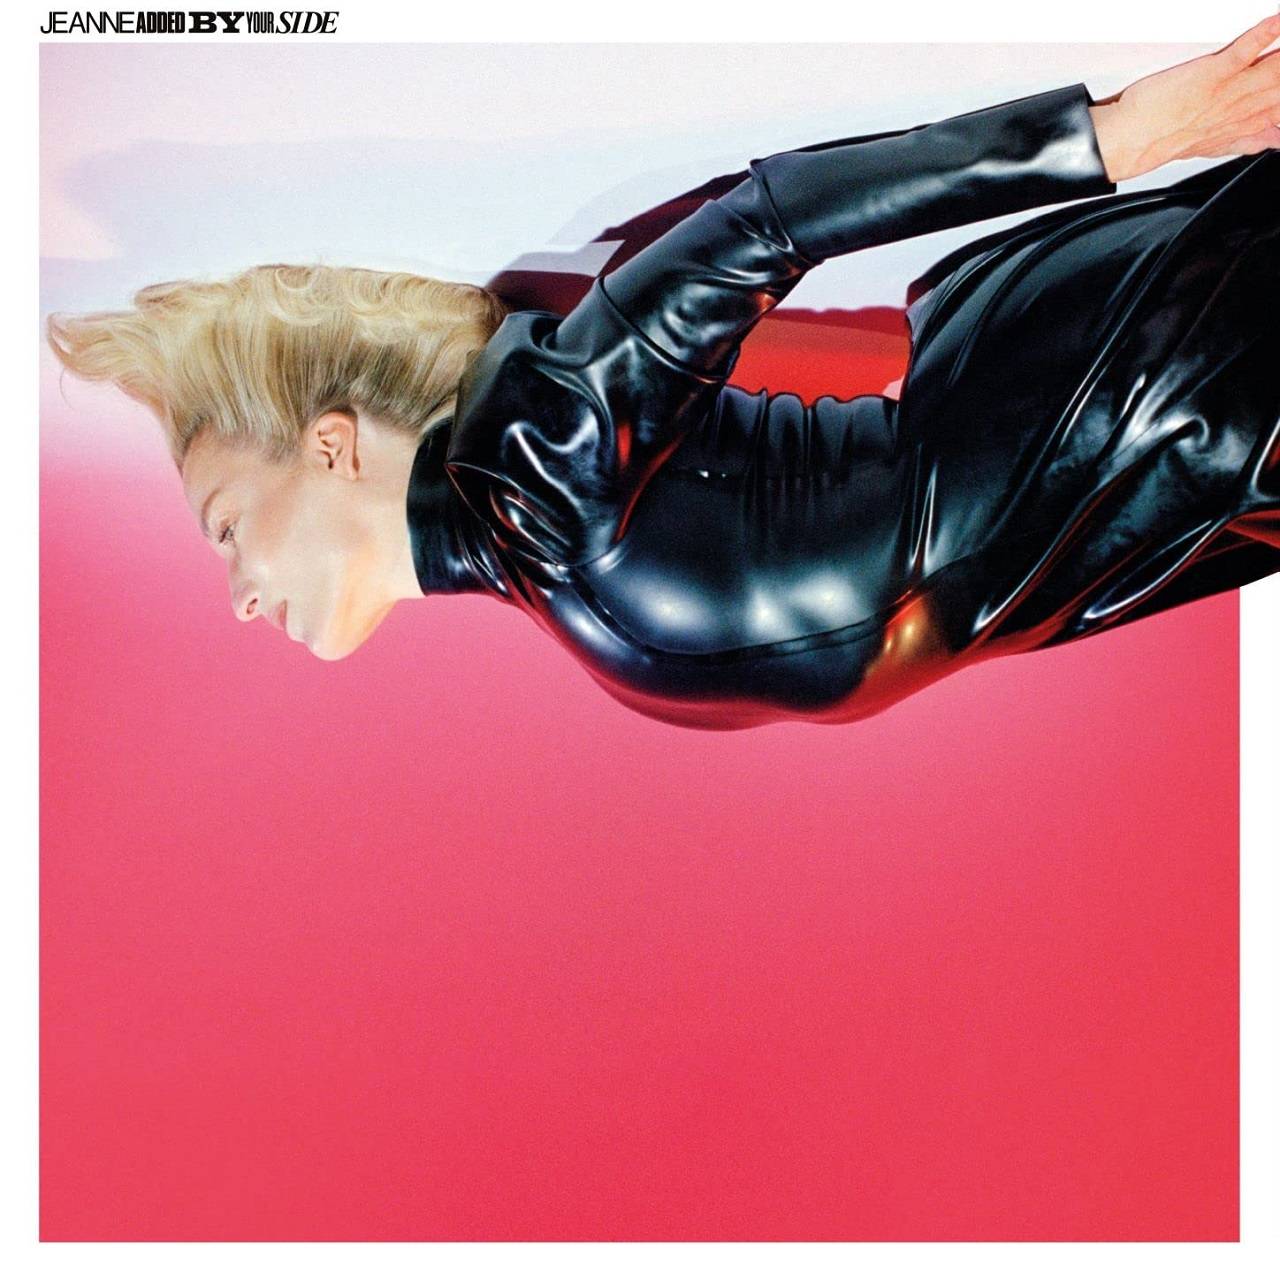 Jeanne Added présente son nouvel album “By Your Side” [Naïve Records].